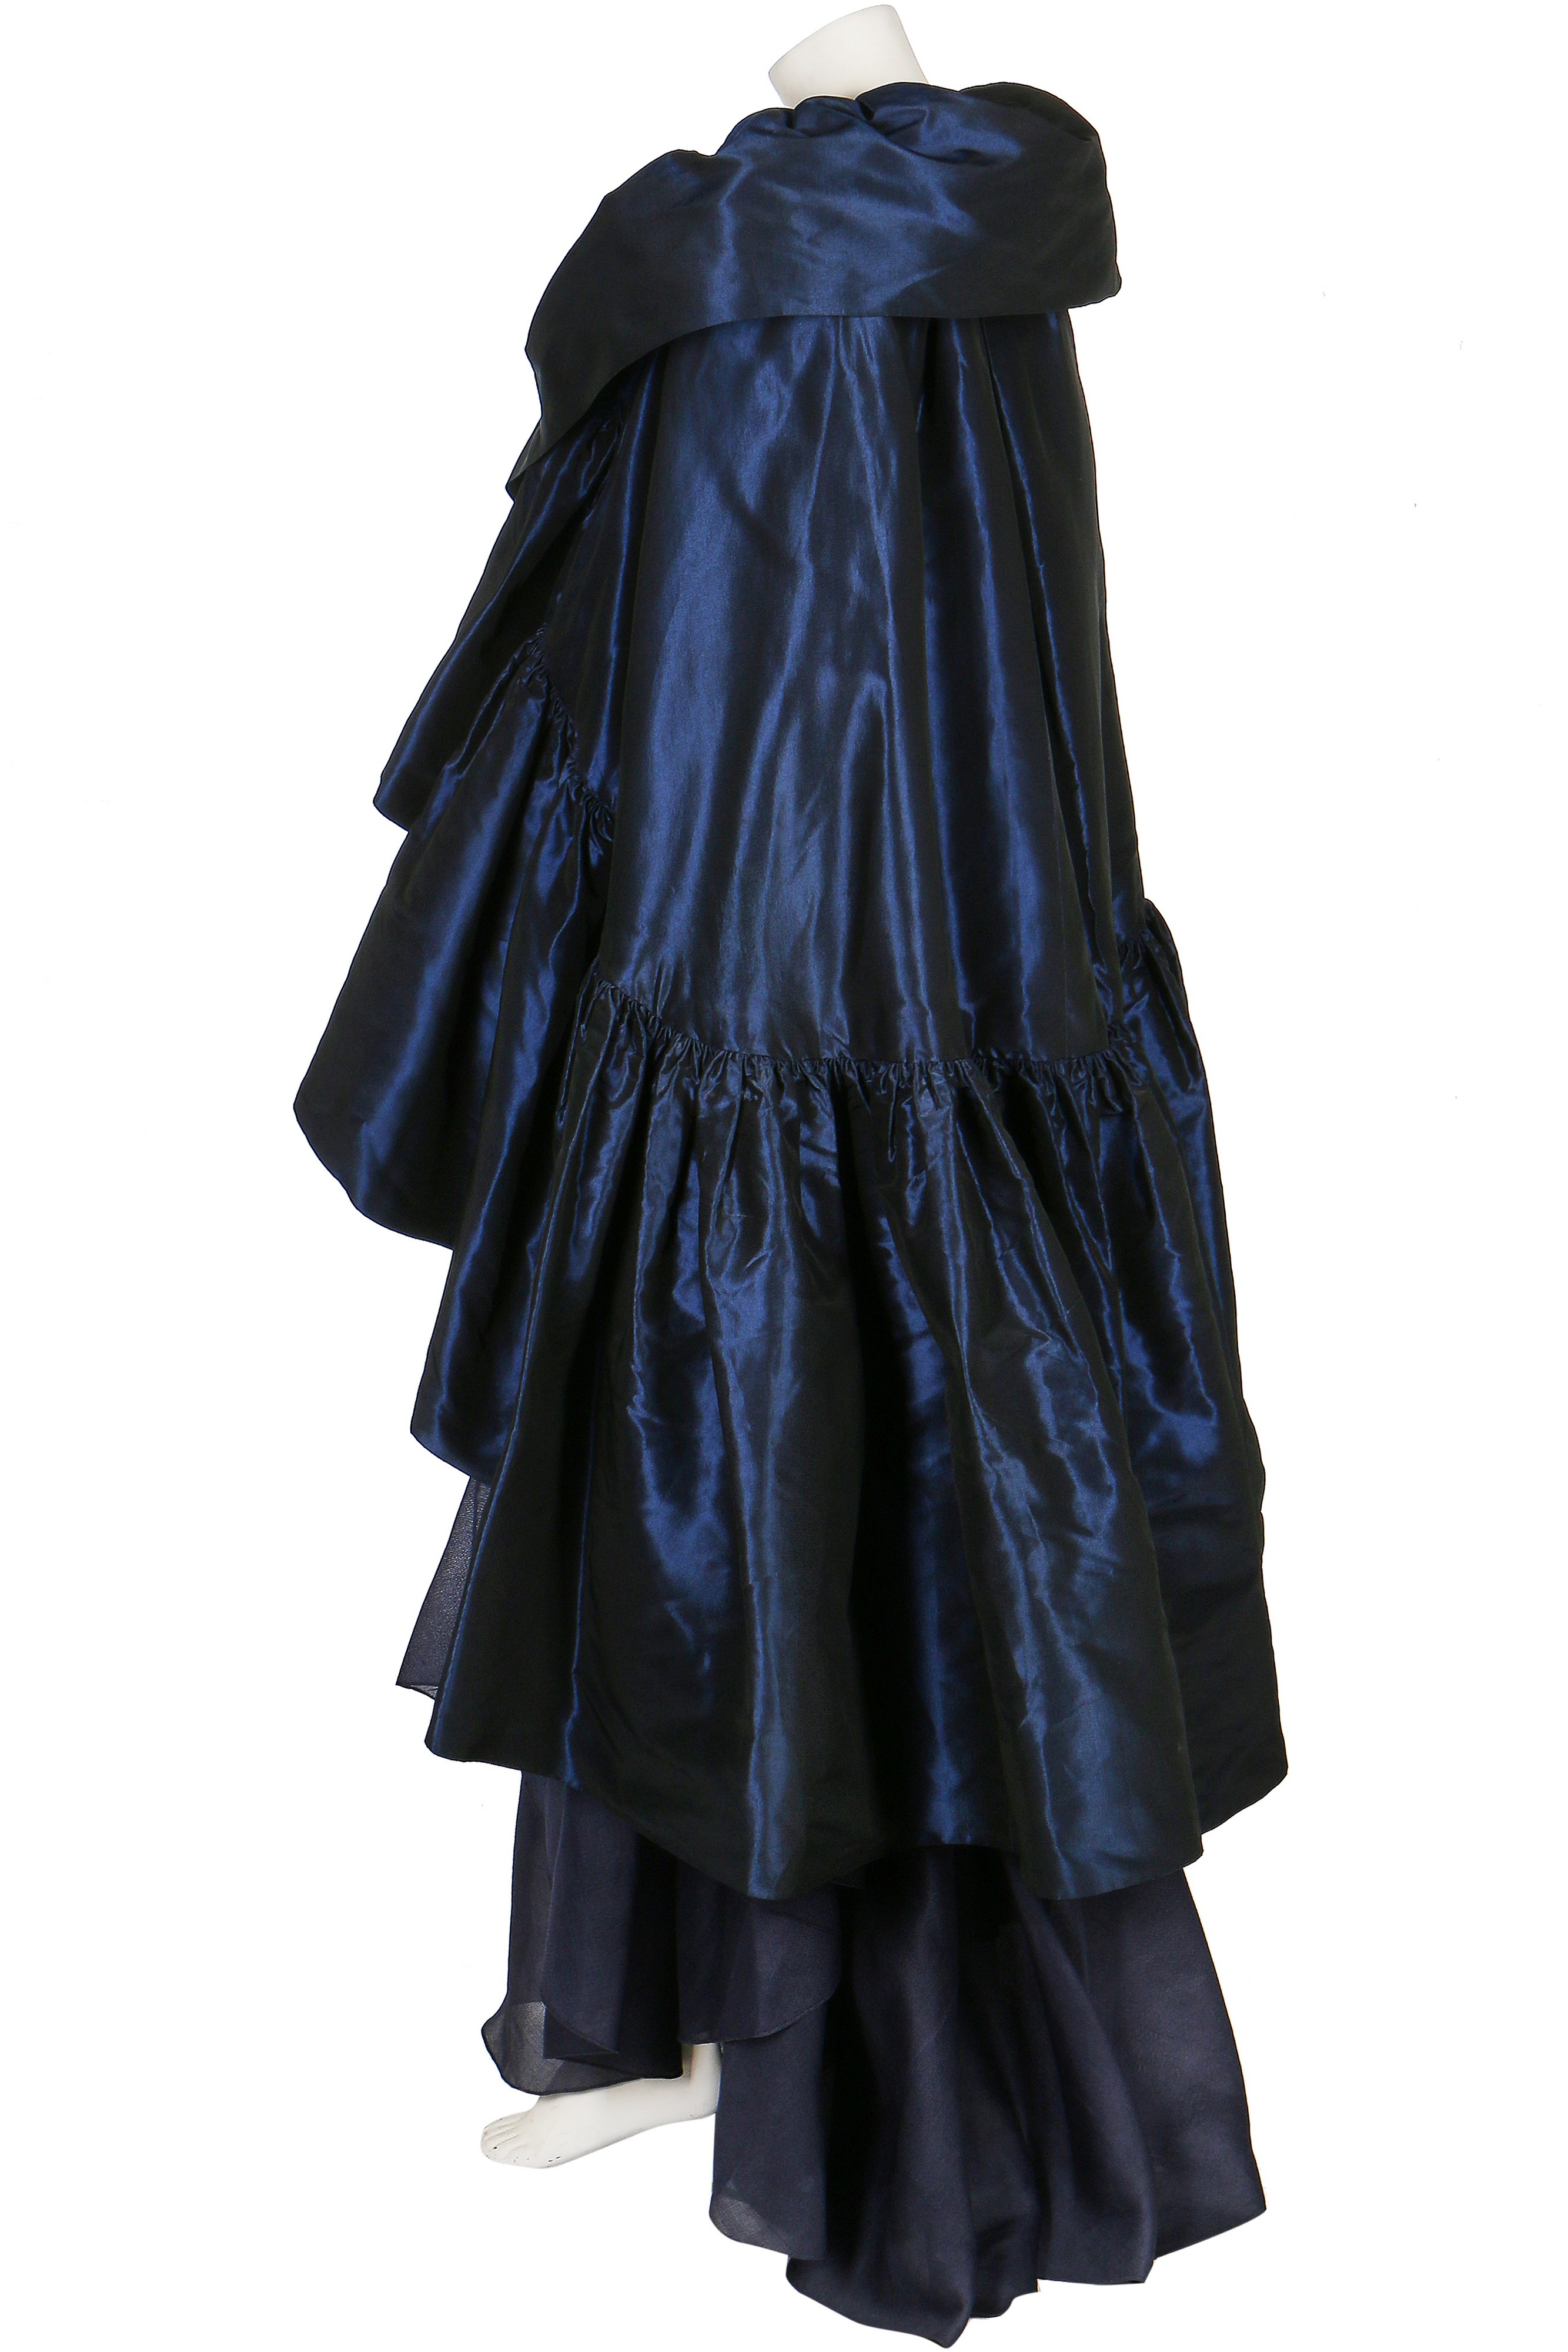 Lot 111 - A Balenciaga couture dark blue silk dress